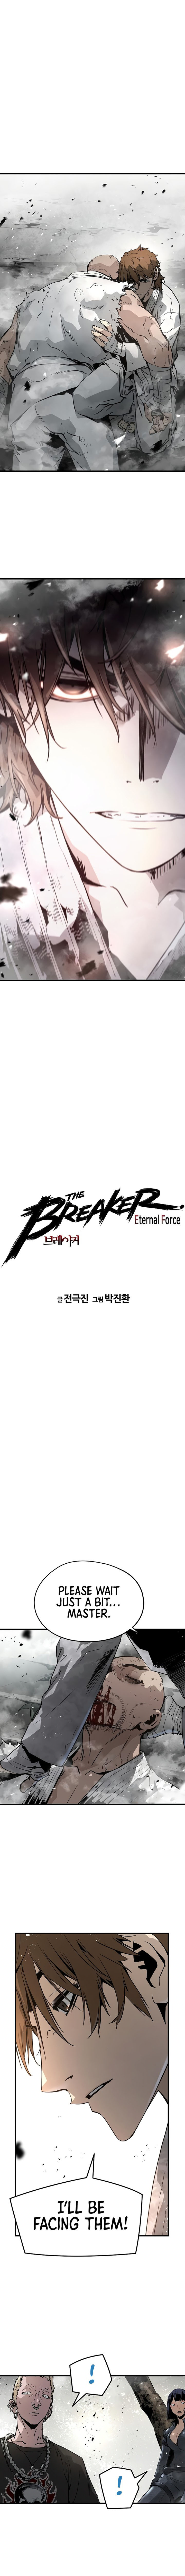 The Breaker 3 Eternal Force 90 1